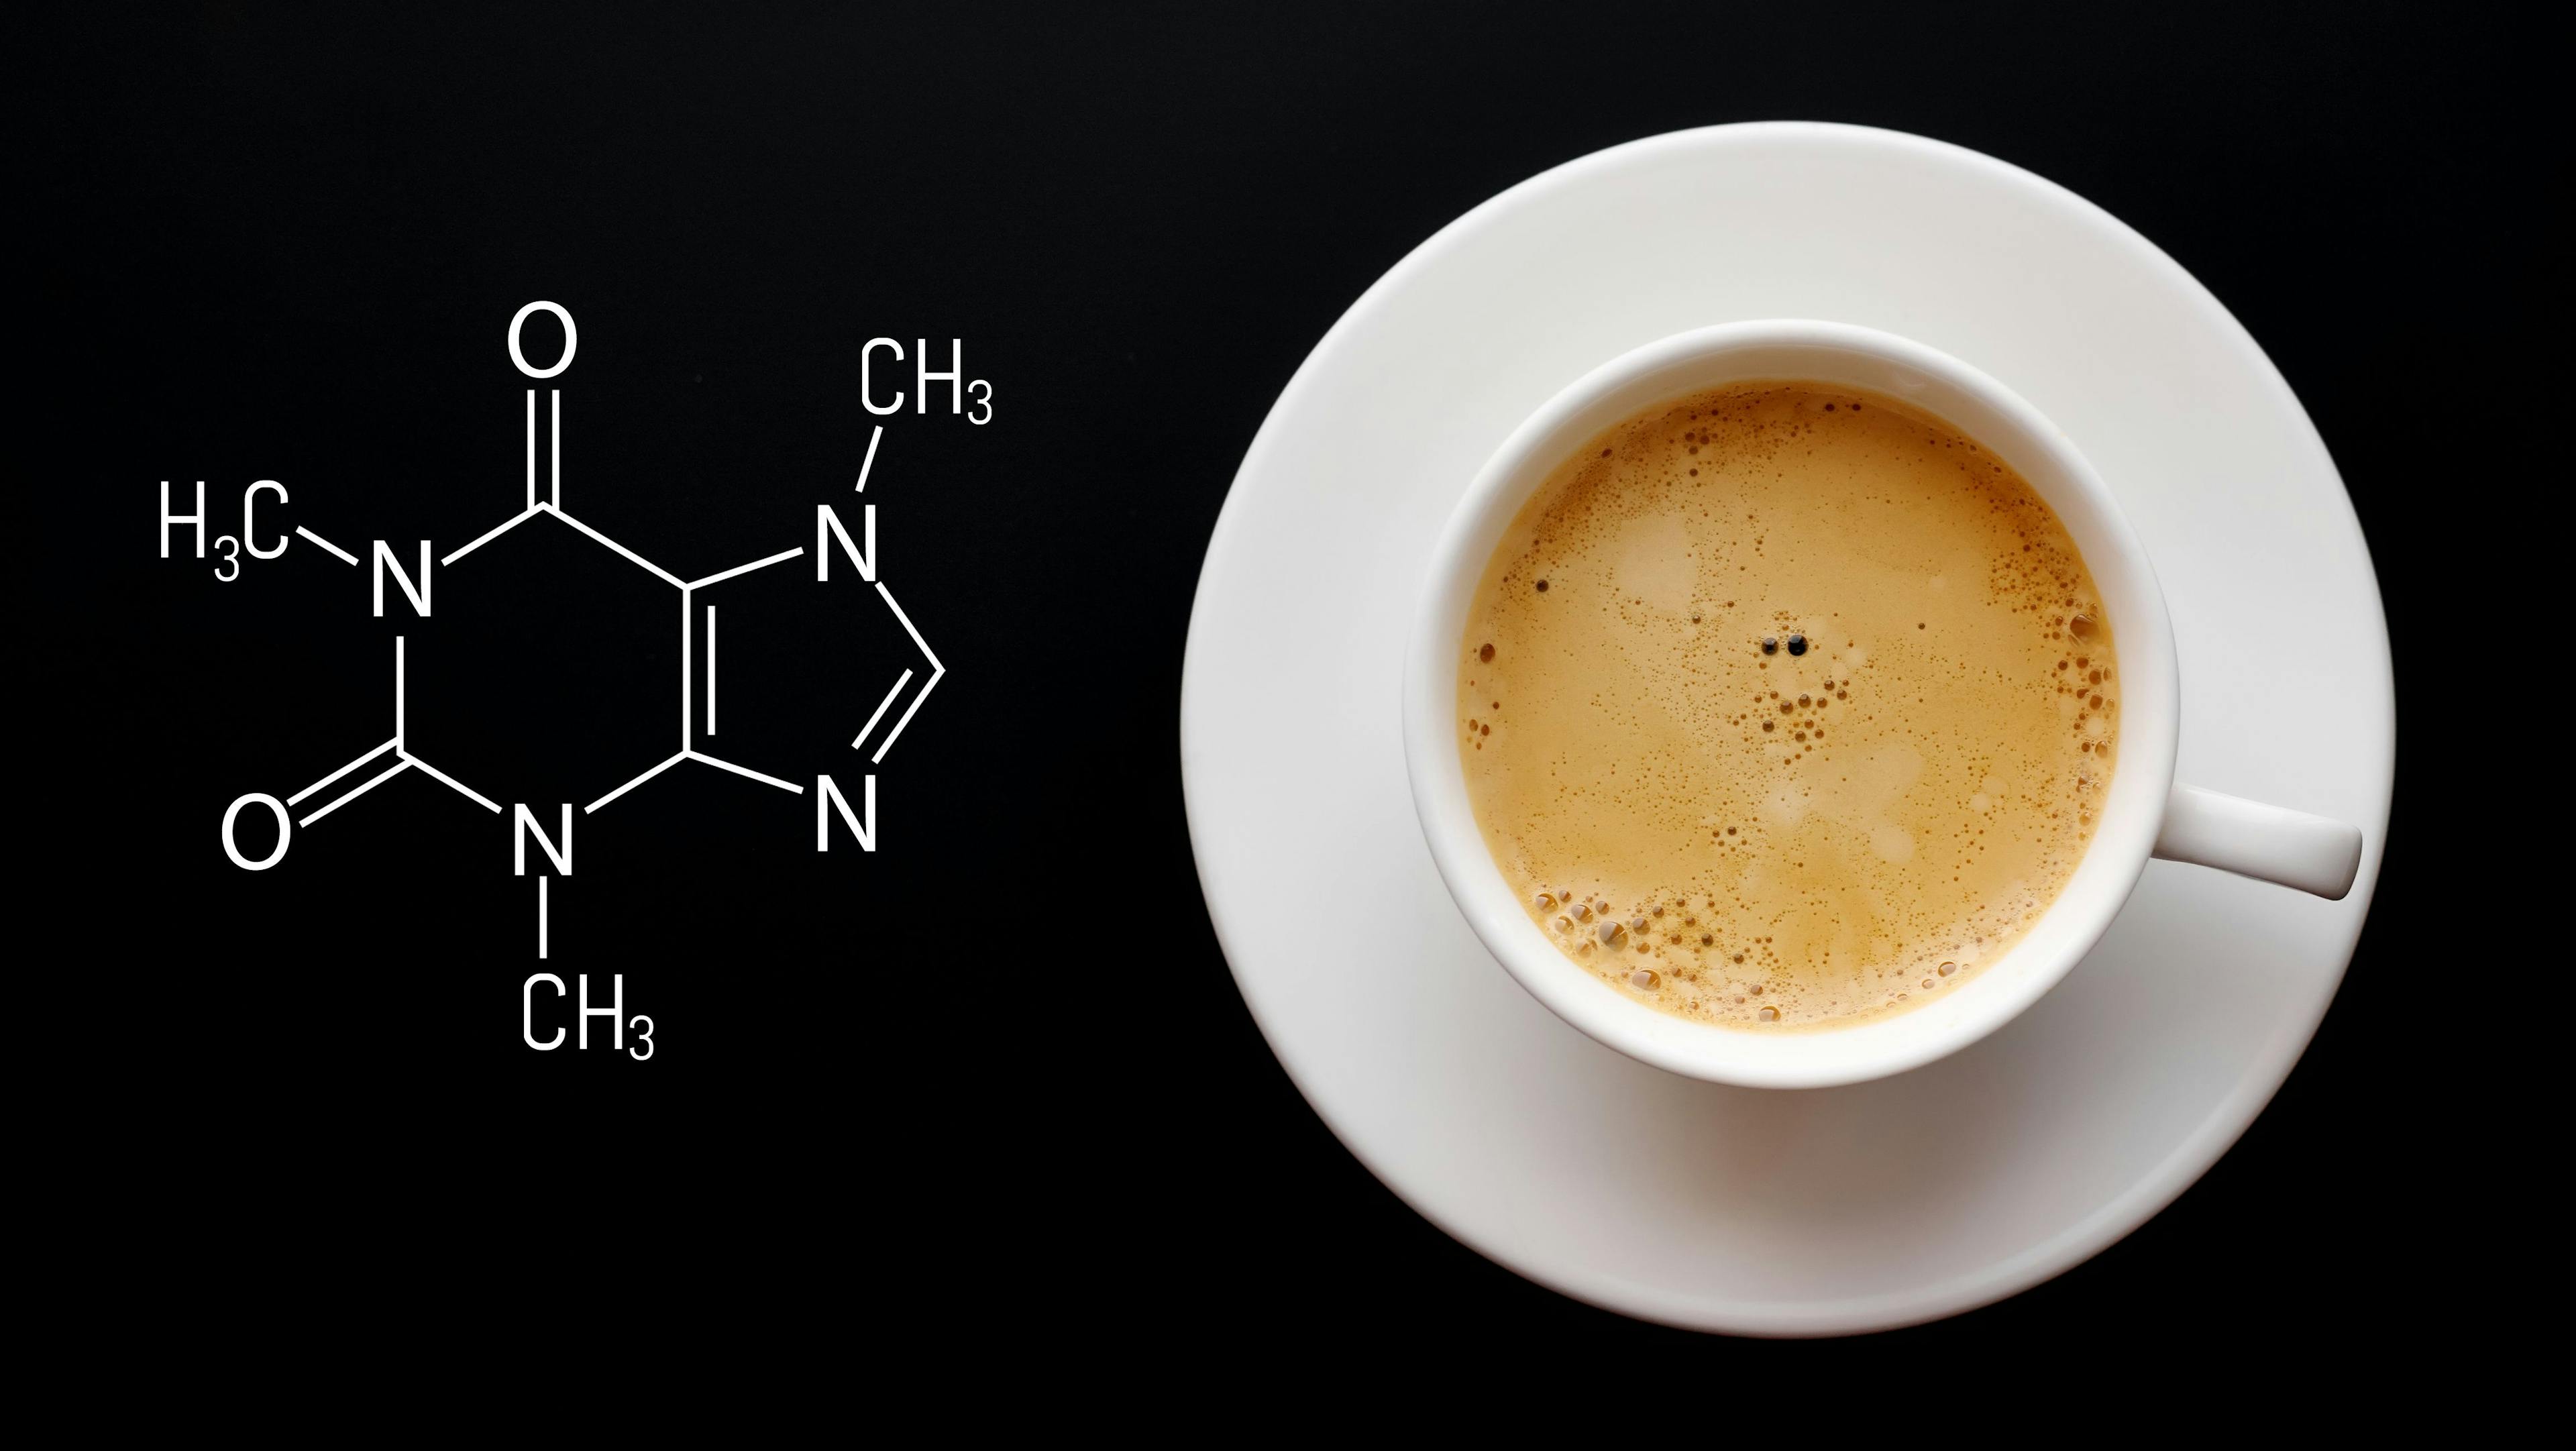 Caffeine Molecule Beside Cup of Coffee | image credit: Aleksandr - stock.adobe.com